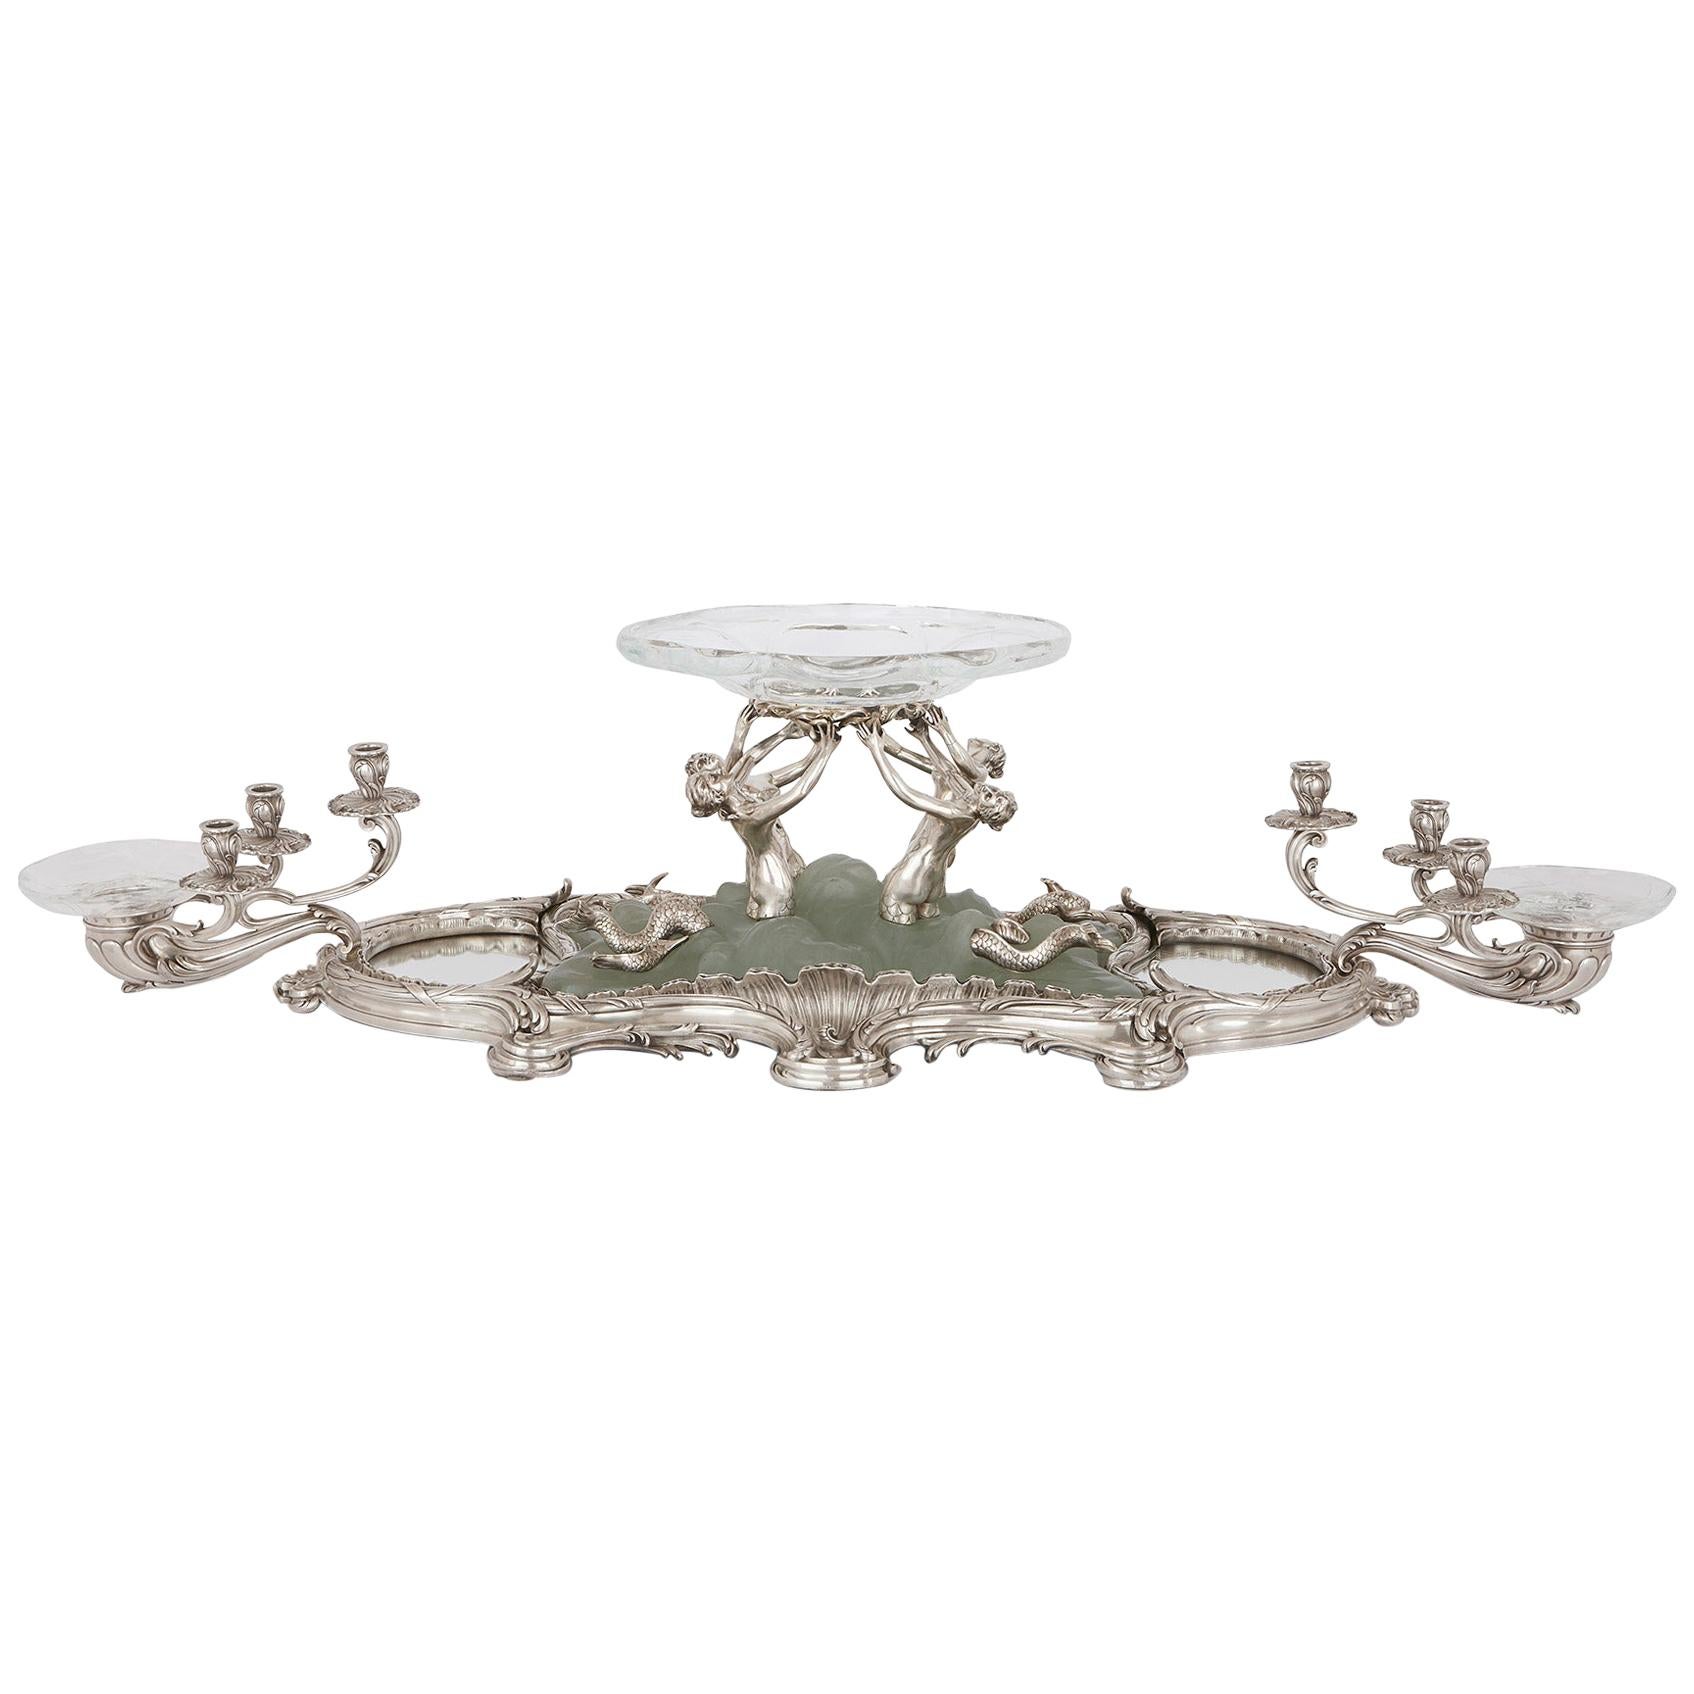 Art Nouveau Silver, Crystal, and Pate De Verre Table Centrepiece by Falize